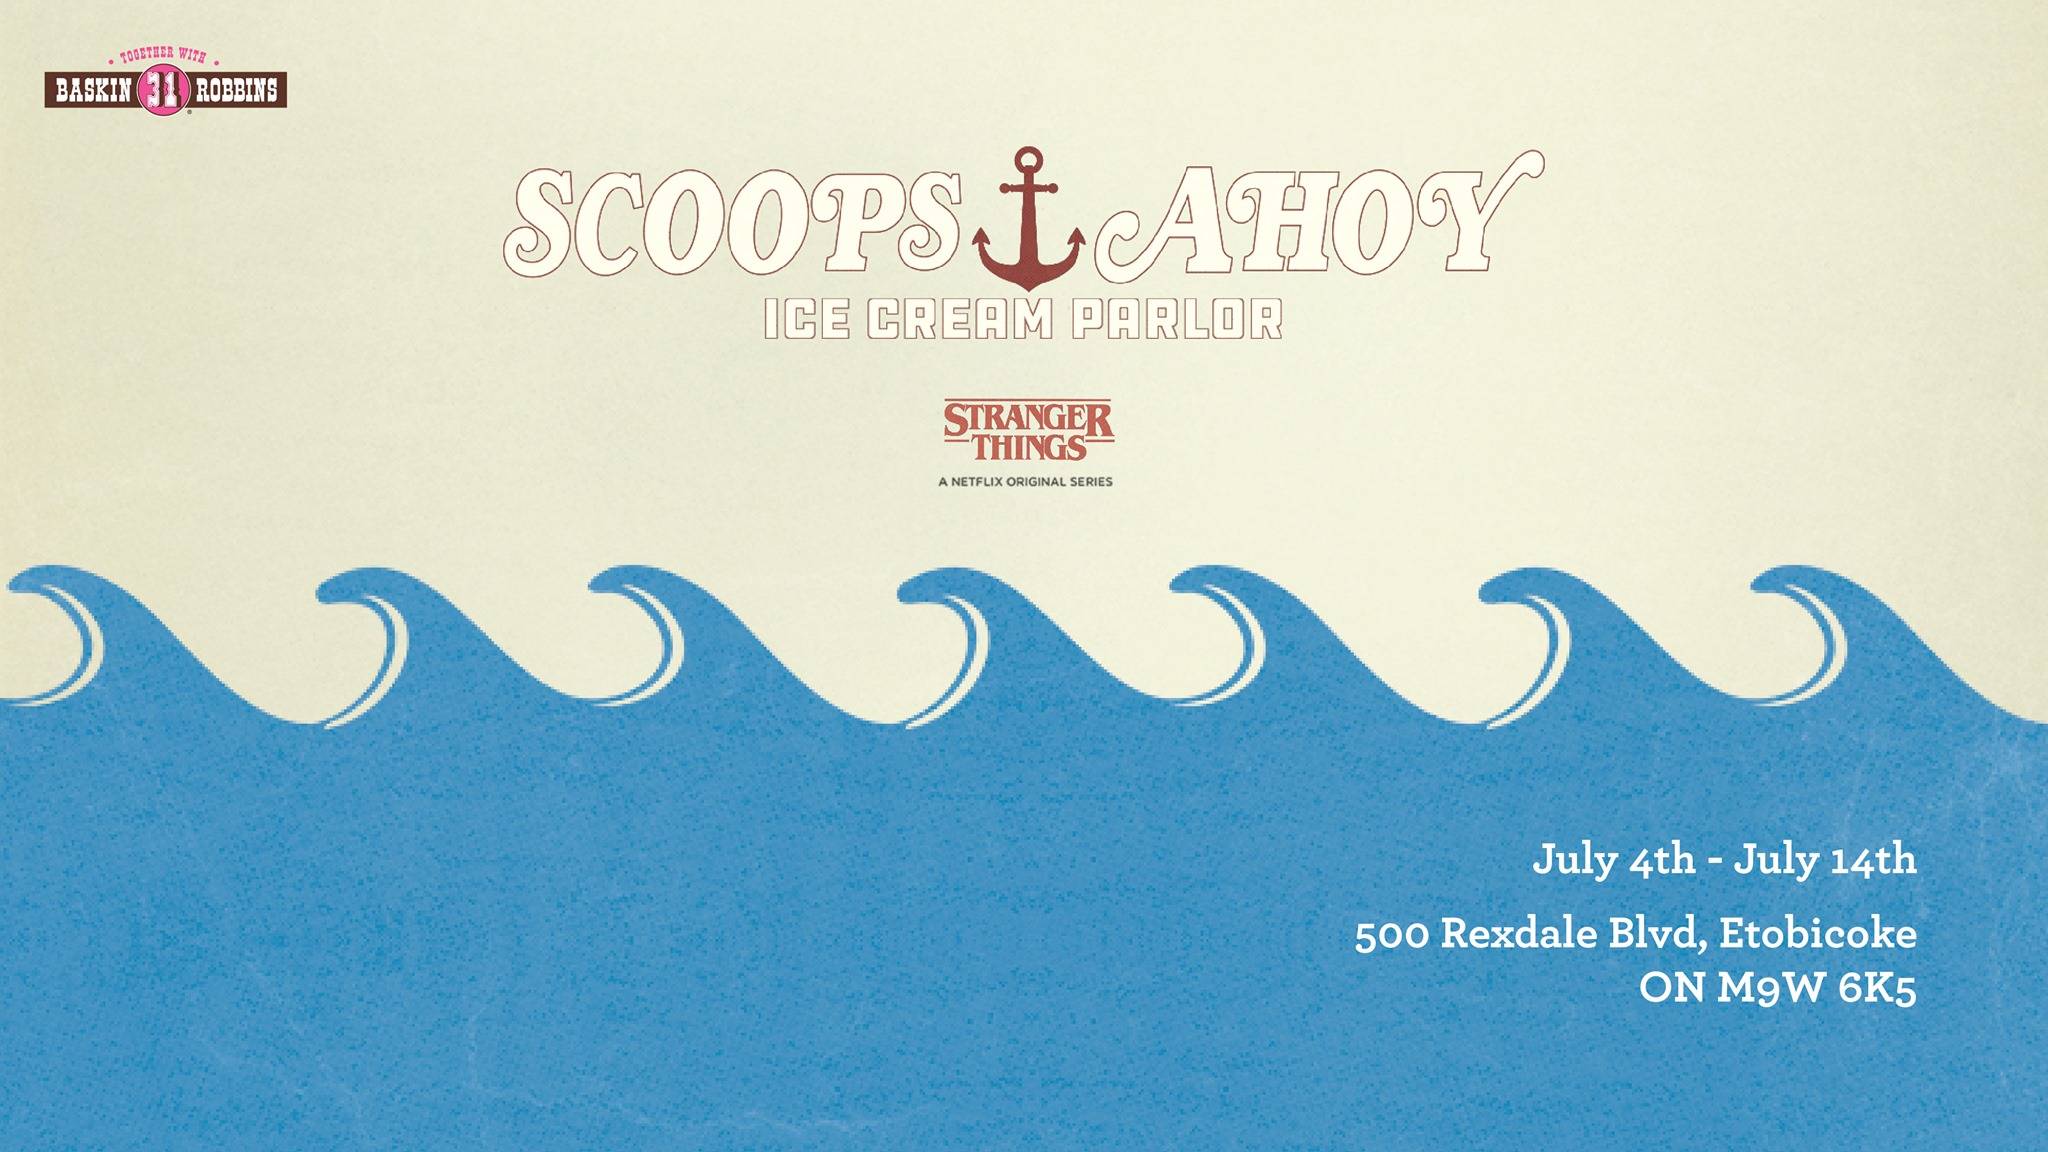 Scoops Ahoy Toronto